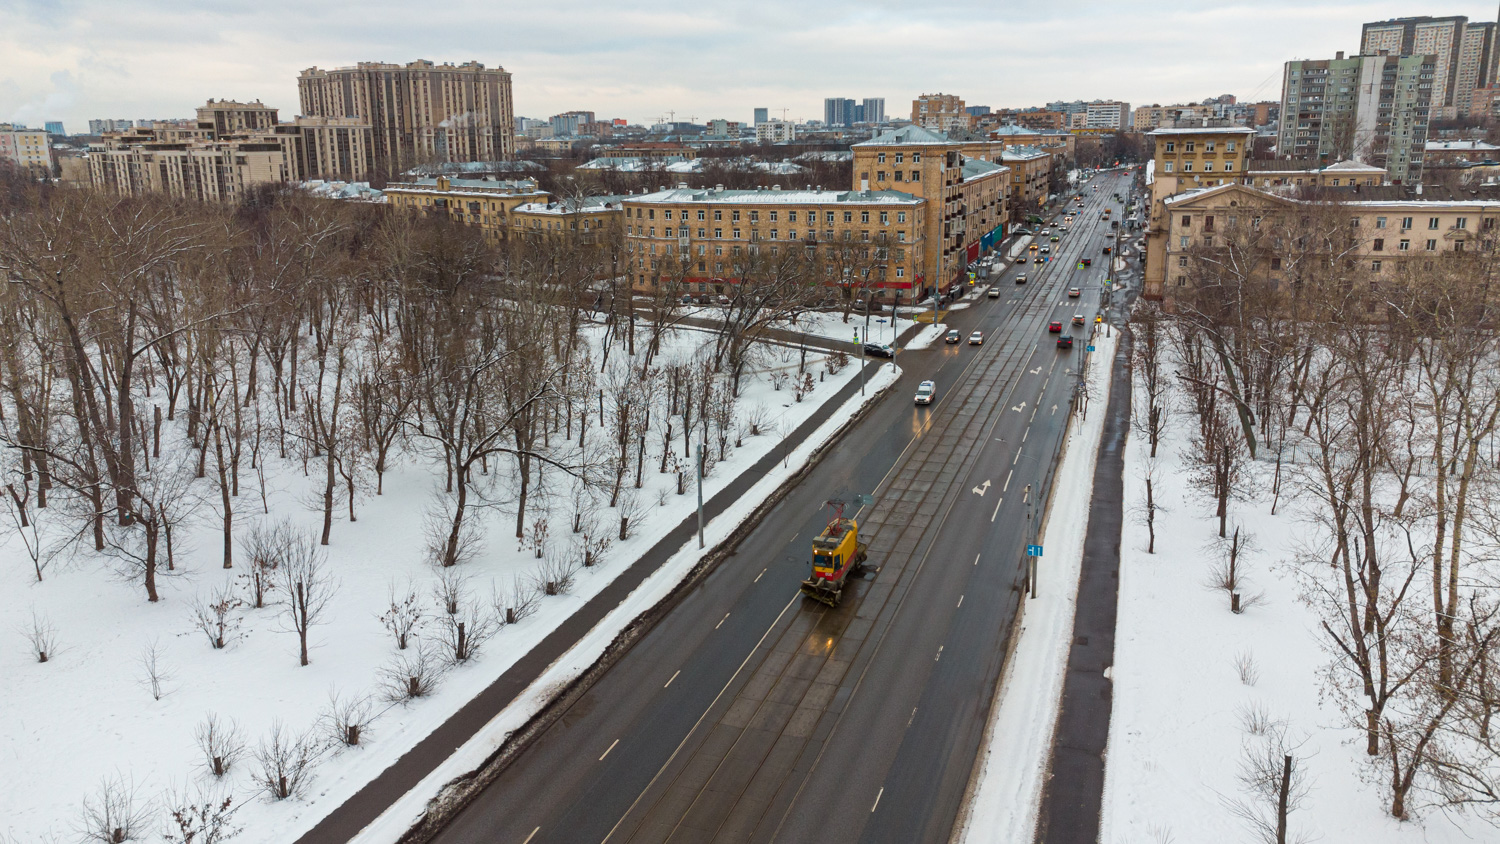 莫斯科, VTK-01 # 0515; 莫斯科 — Tram lines: Eastern Administrative District; 莫斯科 — Views from a height